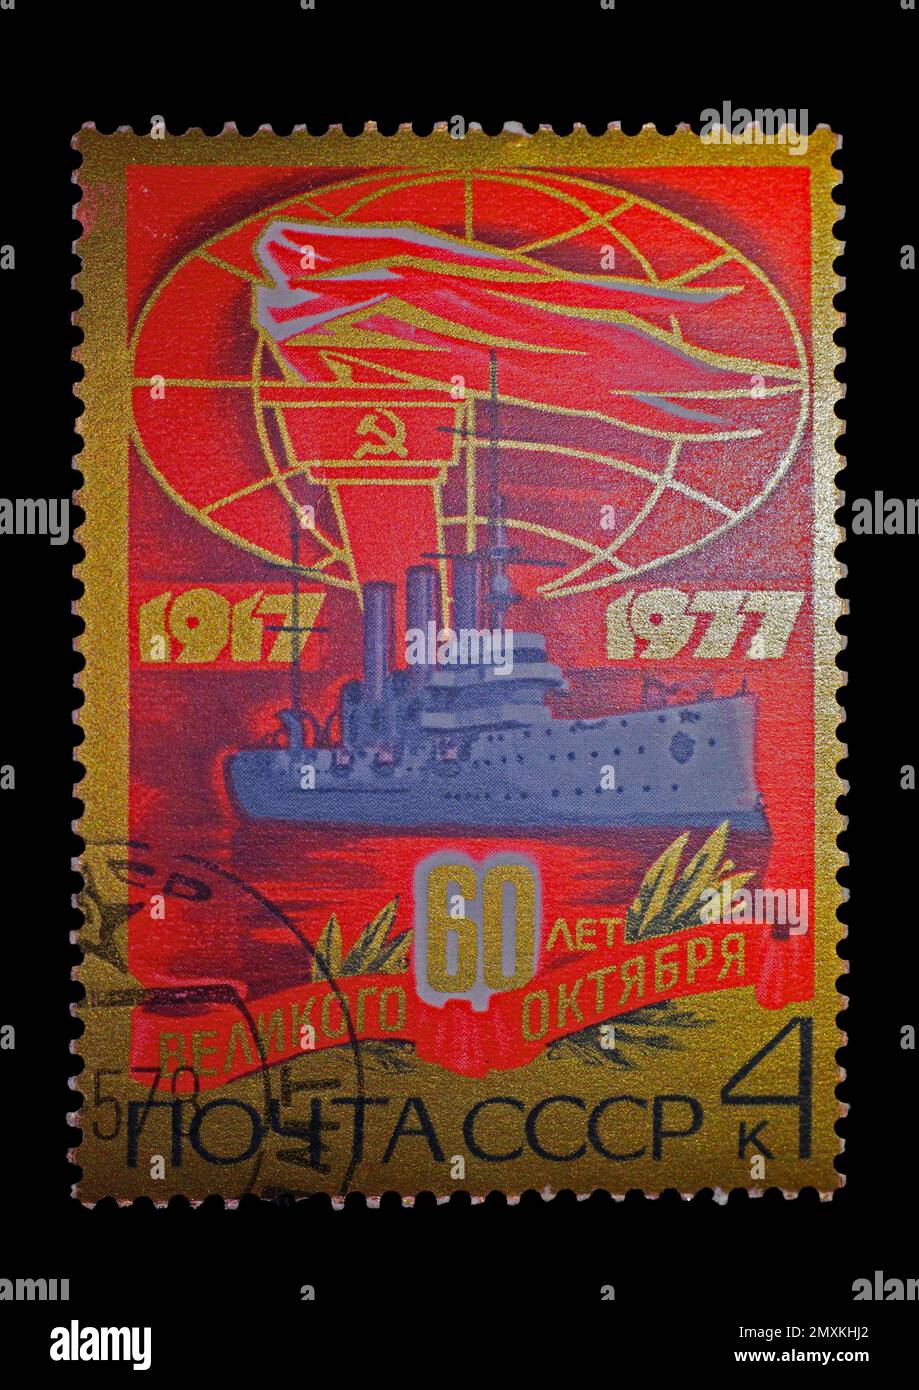 Francobollo russo per il 60th° anniversario della Rivoluzione d'Ottobre, dal 1917 al 1977 Foto Stock